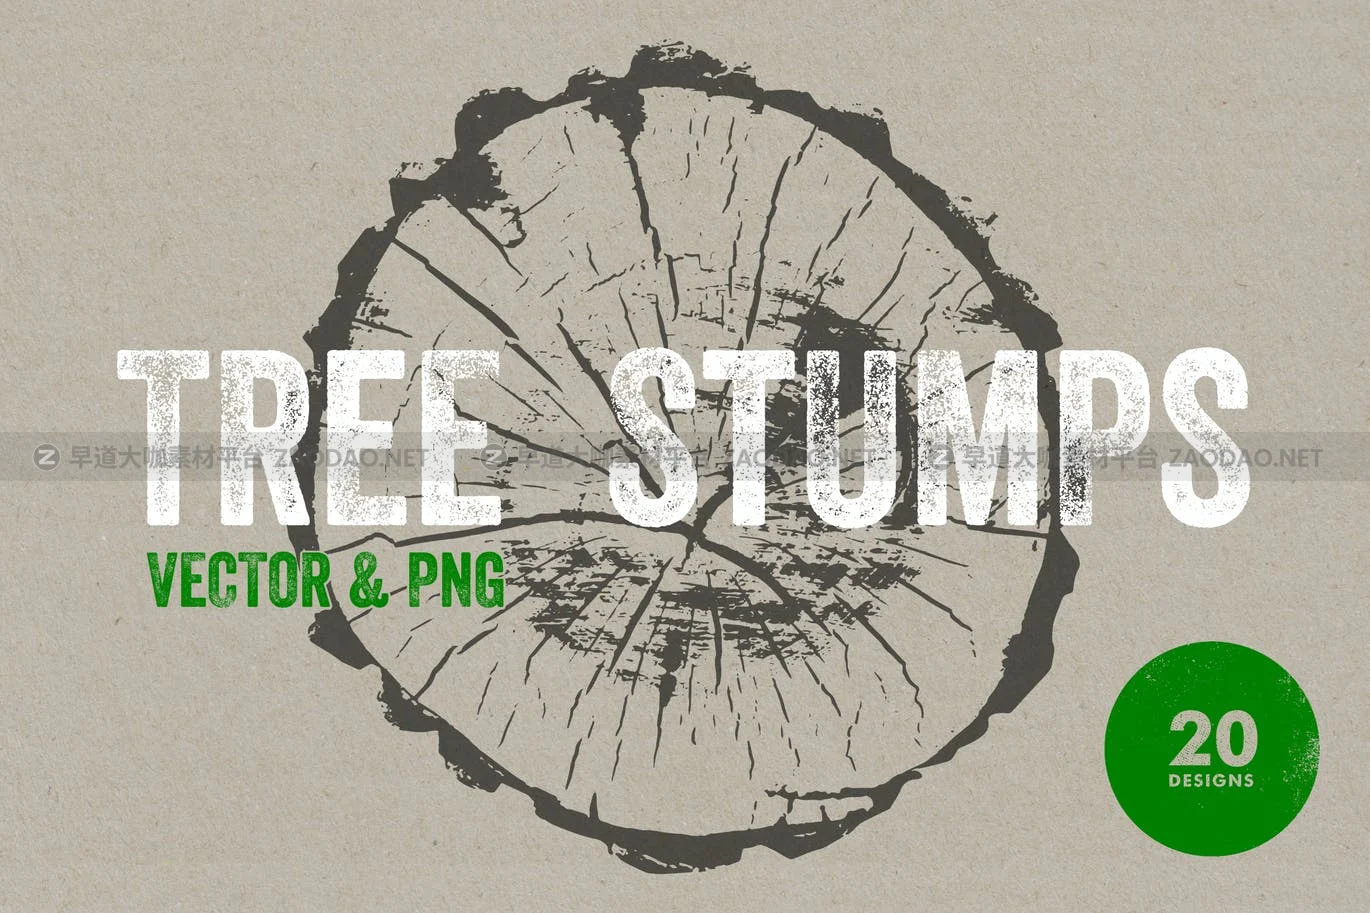 20个黑色树桩纹理装饰图片矢量设计素材 Tree Stump Textures – Vector & PNG插图